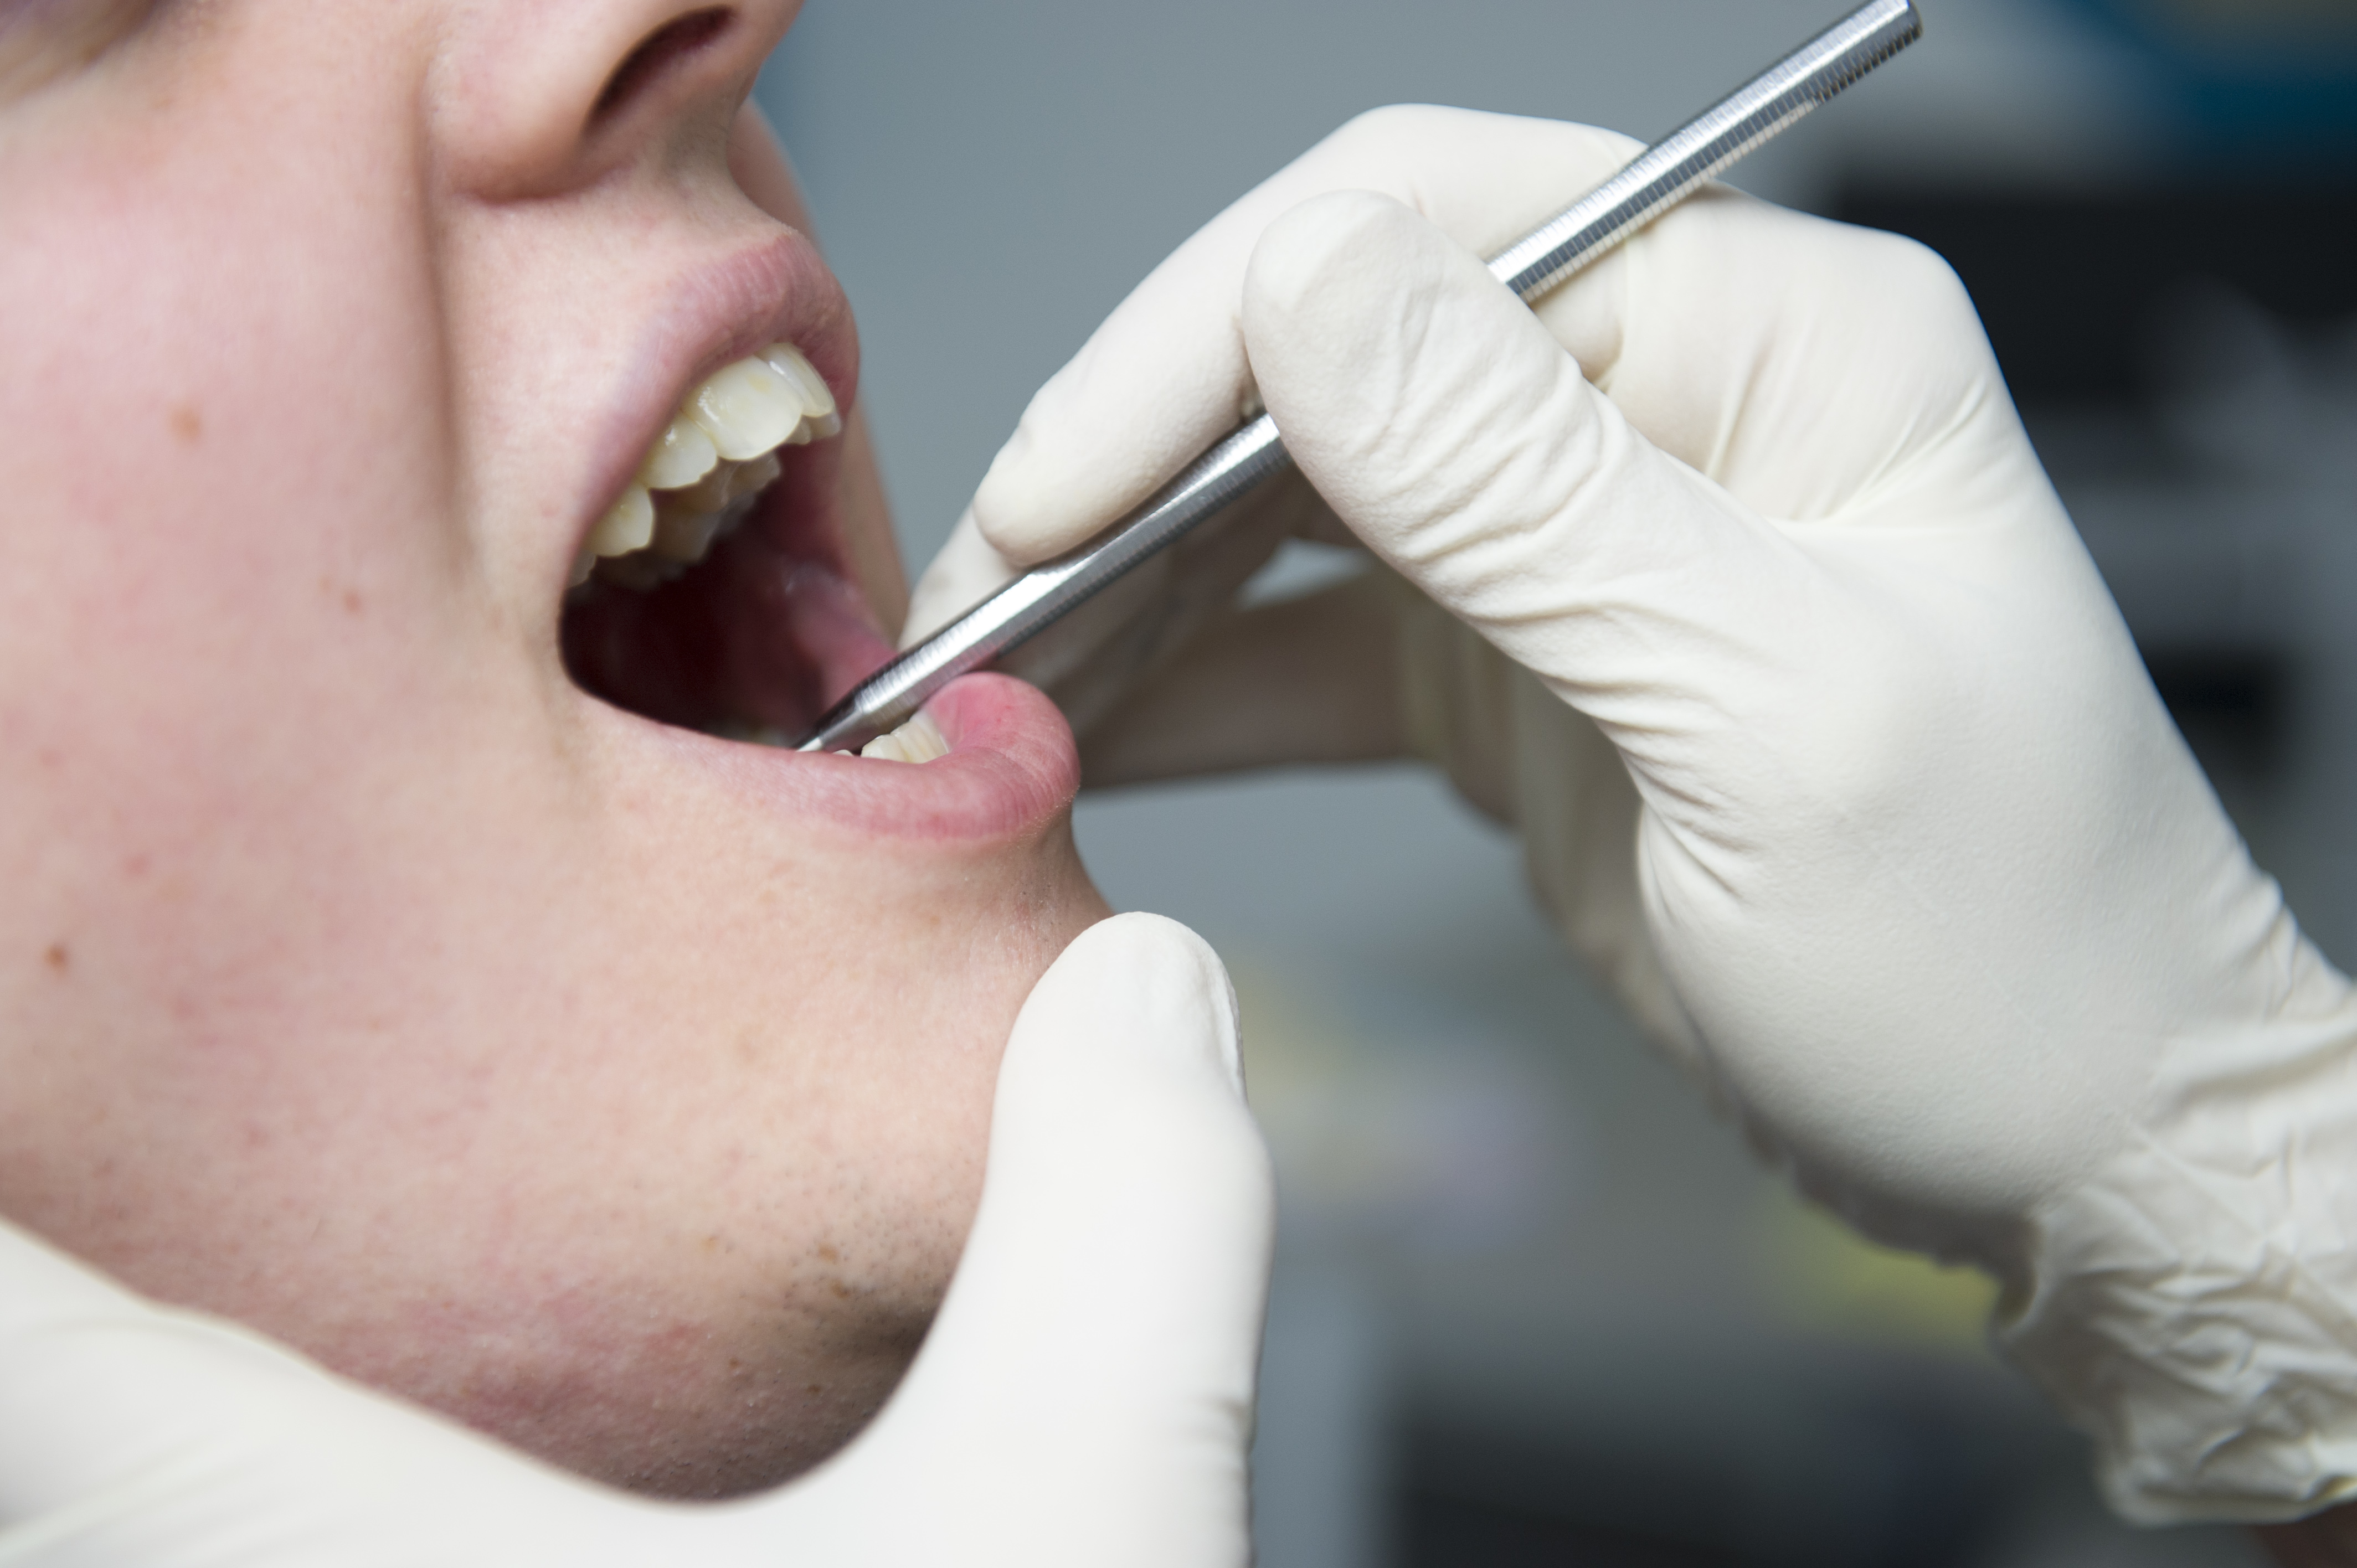 Un accord dentistes-mutualités «positif pour les patients et les dentistes» 